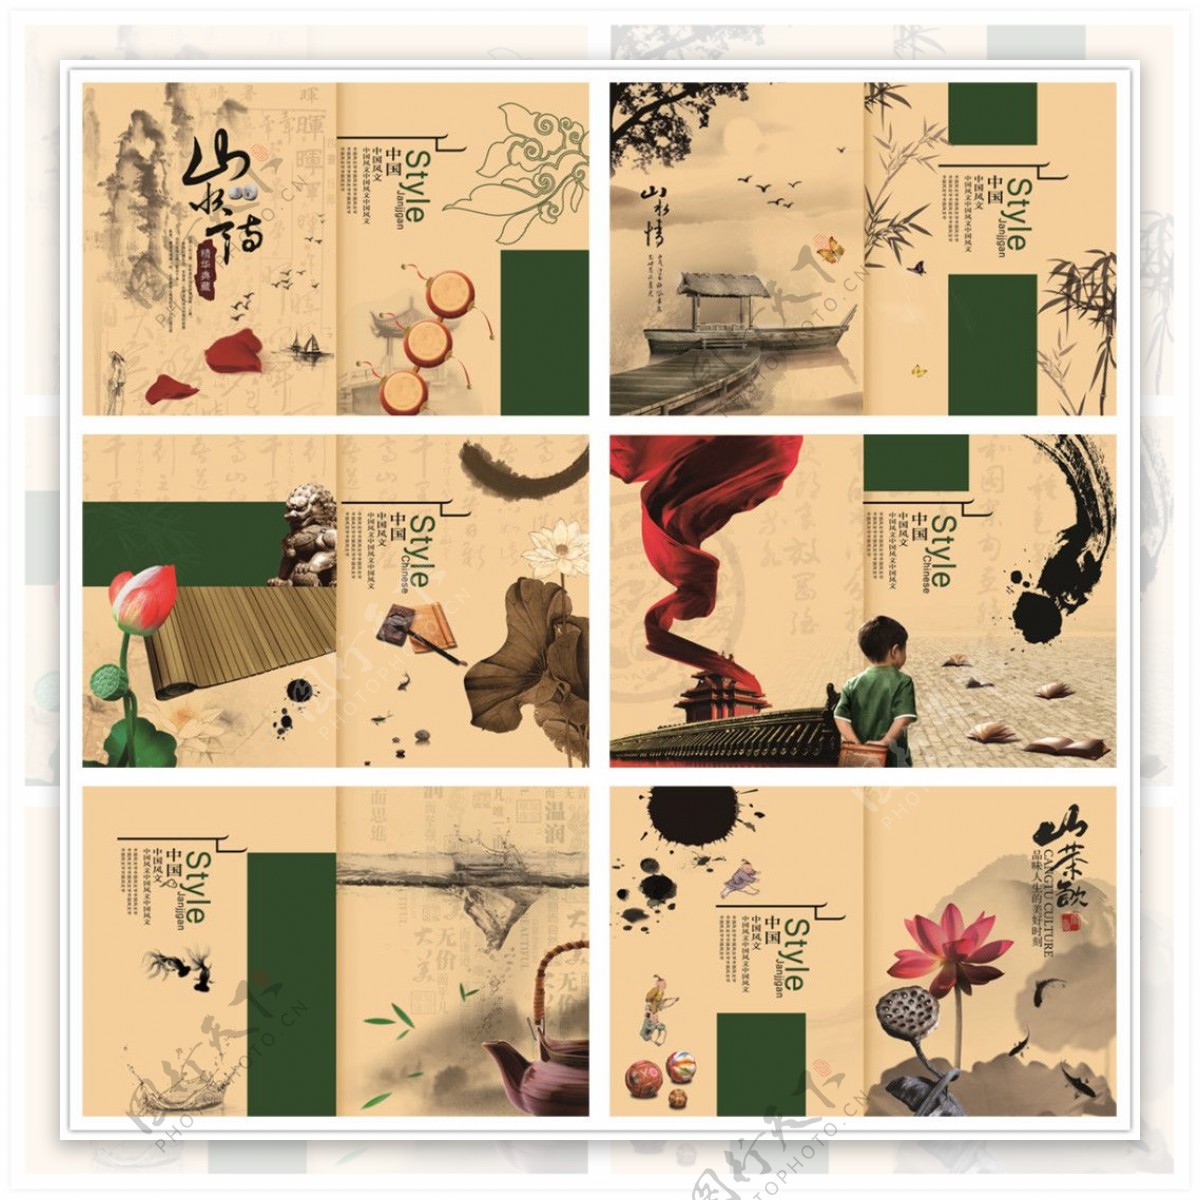 古典中国风宣传画册